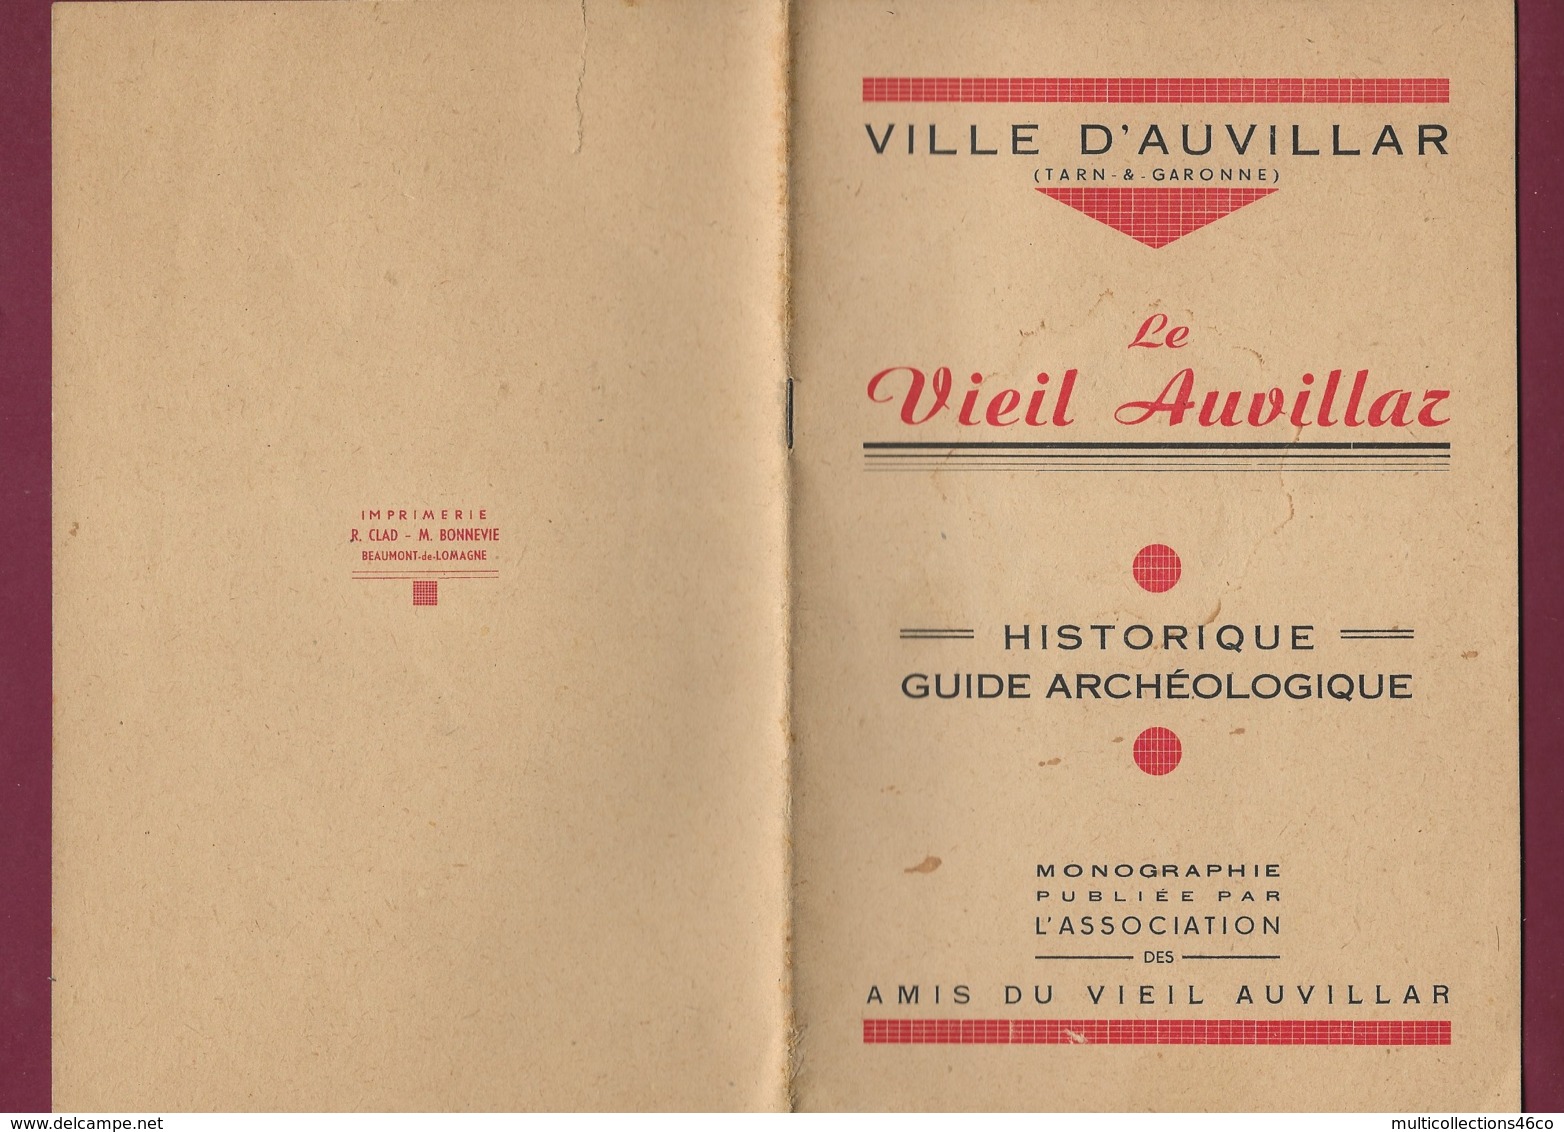 200320B - Opuscule 1947 VILLE D' AUVILLAR Tarn Et Garonne LE VIEIL AUVILLAR Guide Archéologique - Midi-Pyrénées